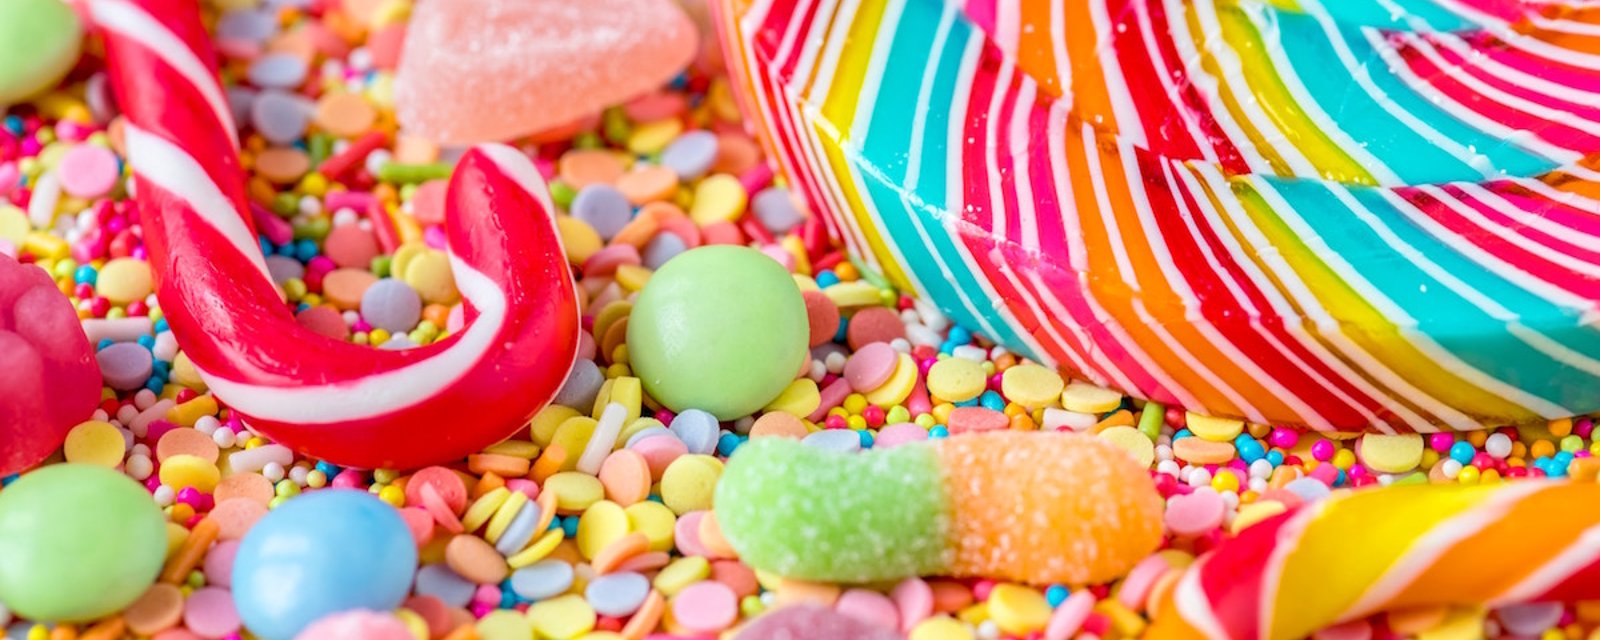 Ces 5 croyances au sujet du sucre sont-elles des mythes ou des réalités?